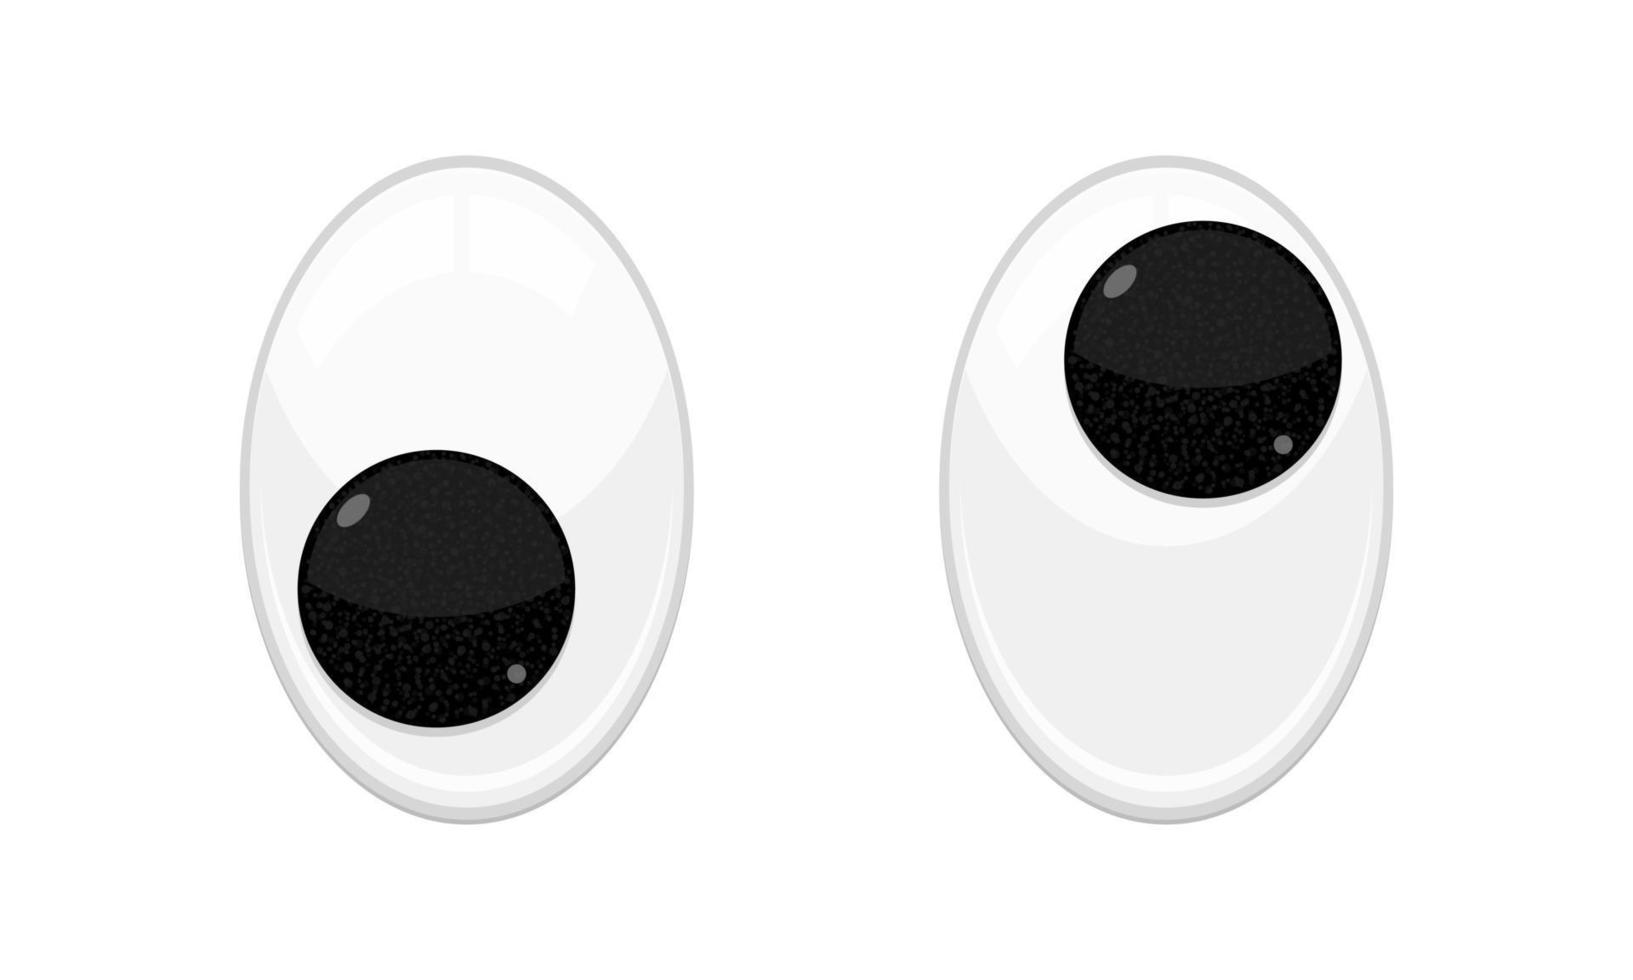 giocattolo in plastica sicurezza occhi traballanti design piatto illustrazione vettoriale isolato su sfondo bianco.